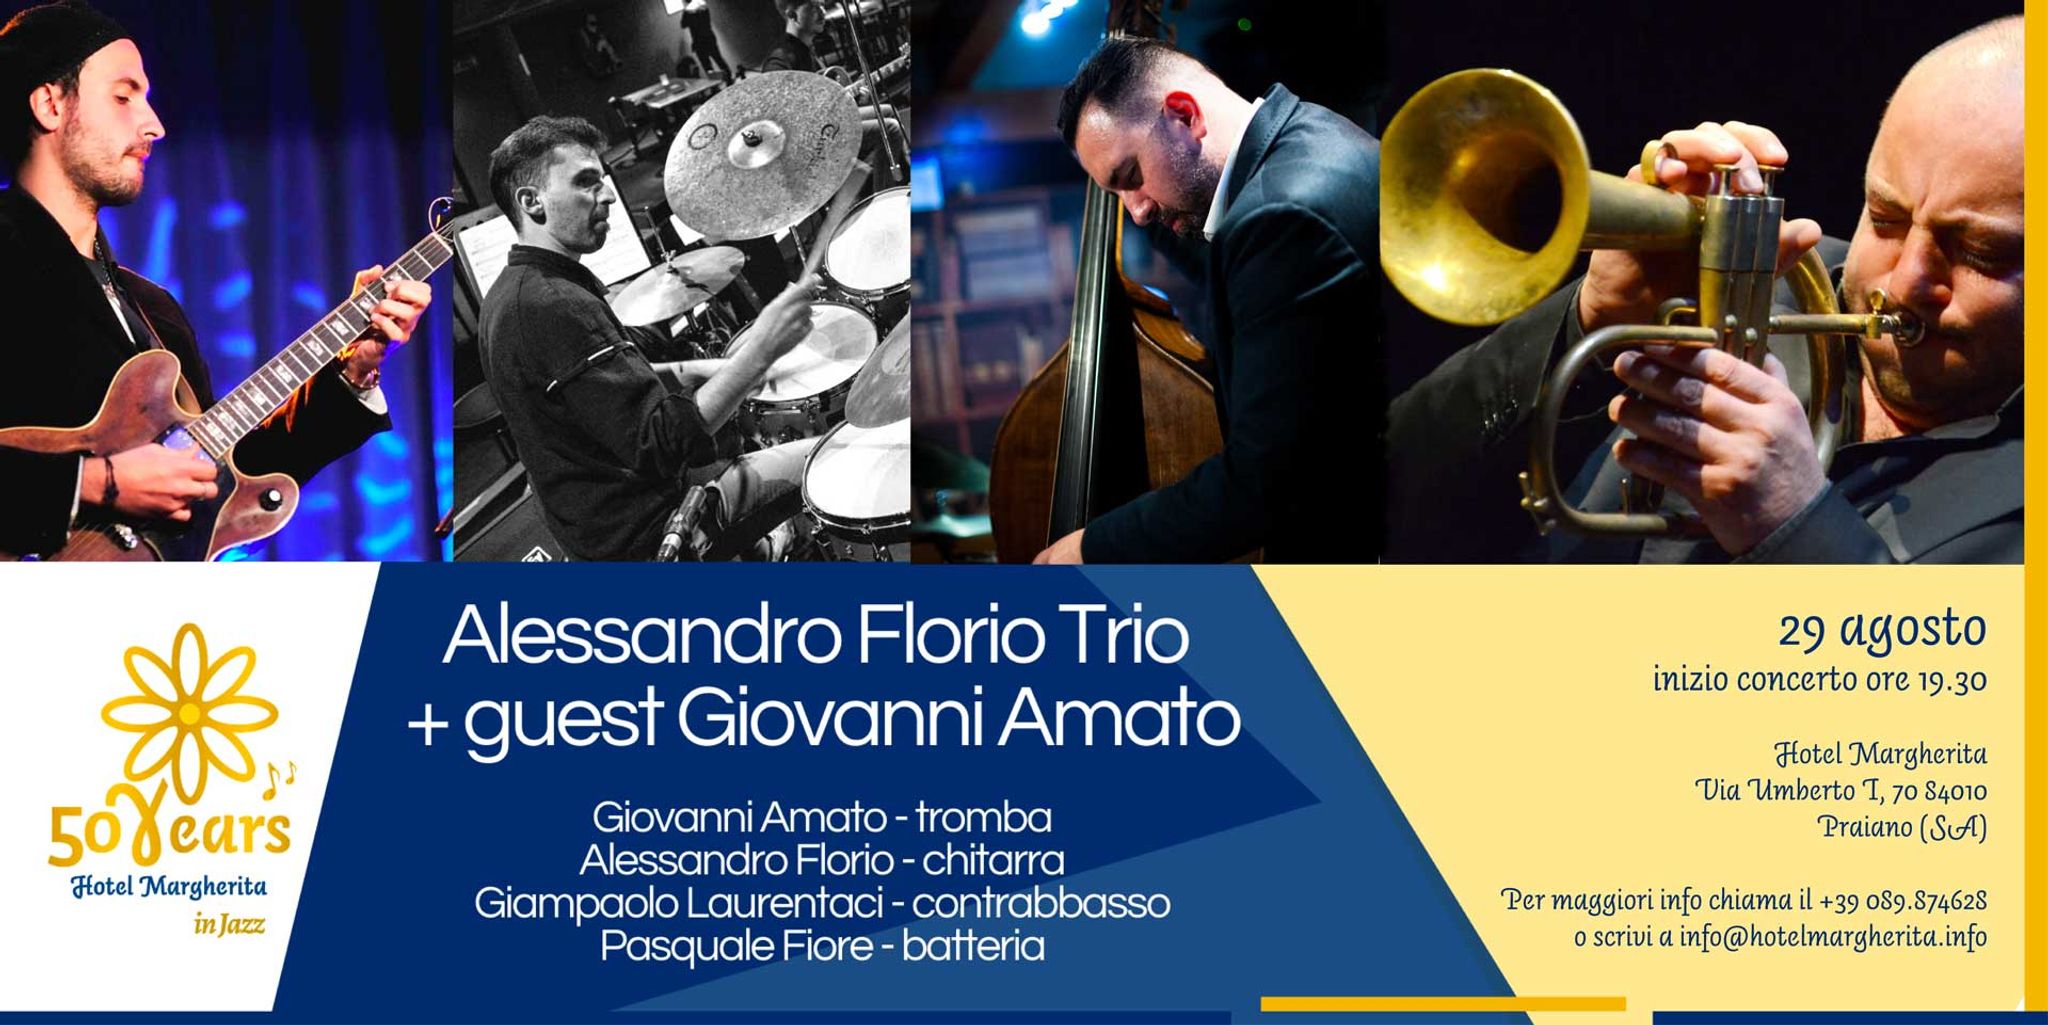  Hotel Margherita in Jazz: Alessandro Florio Trio + guest Giovanni Amato